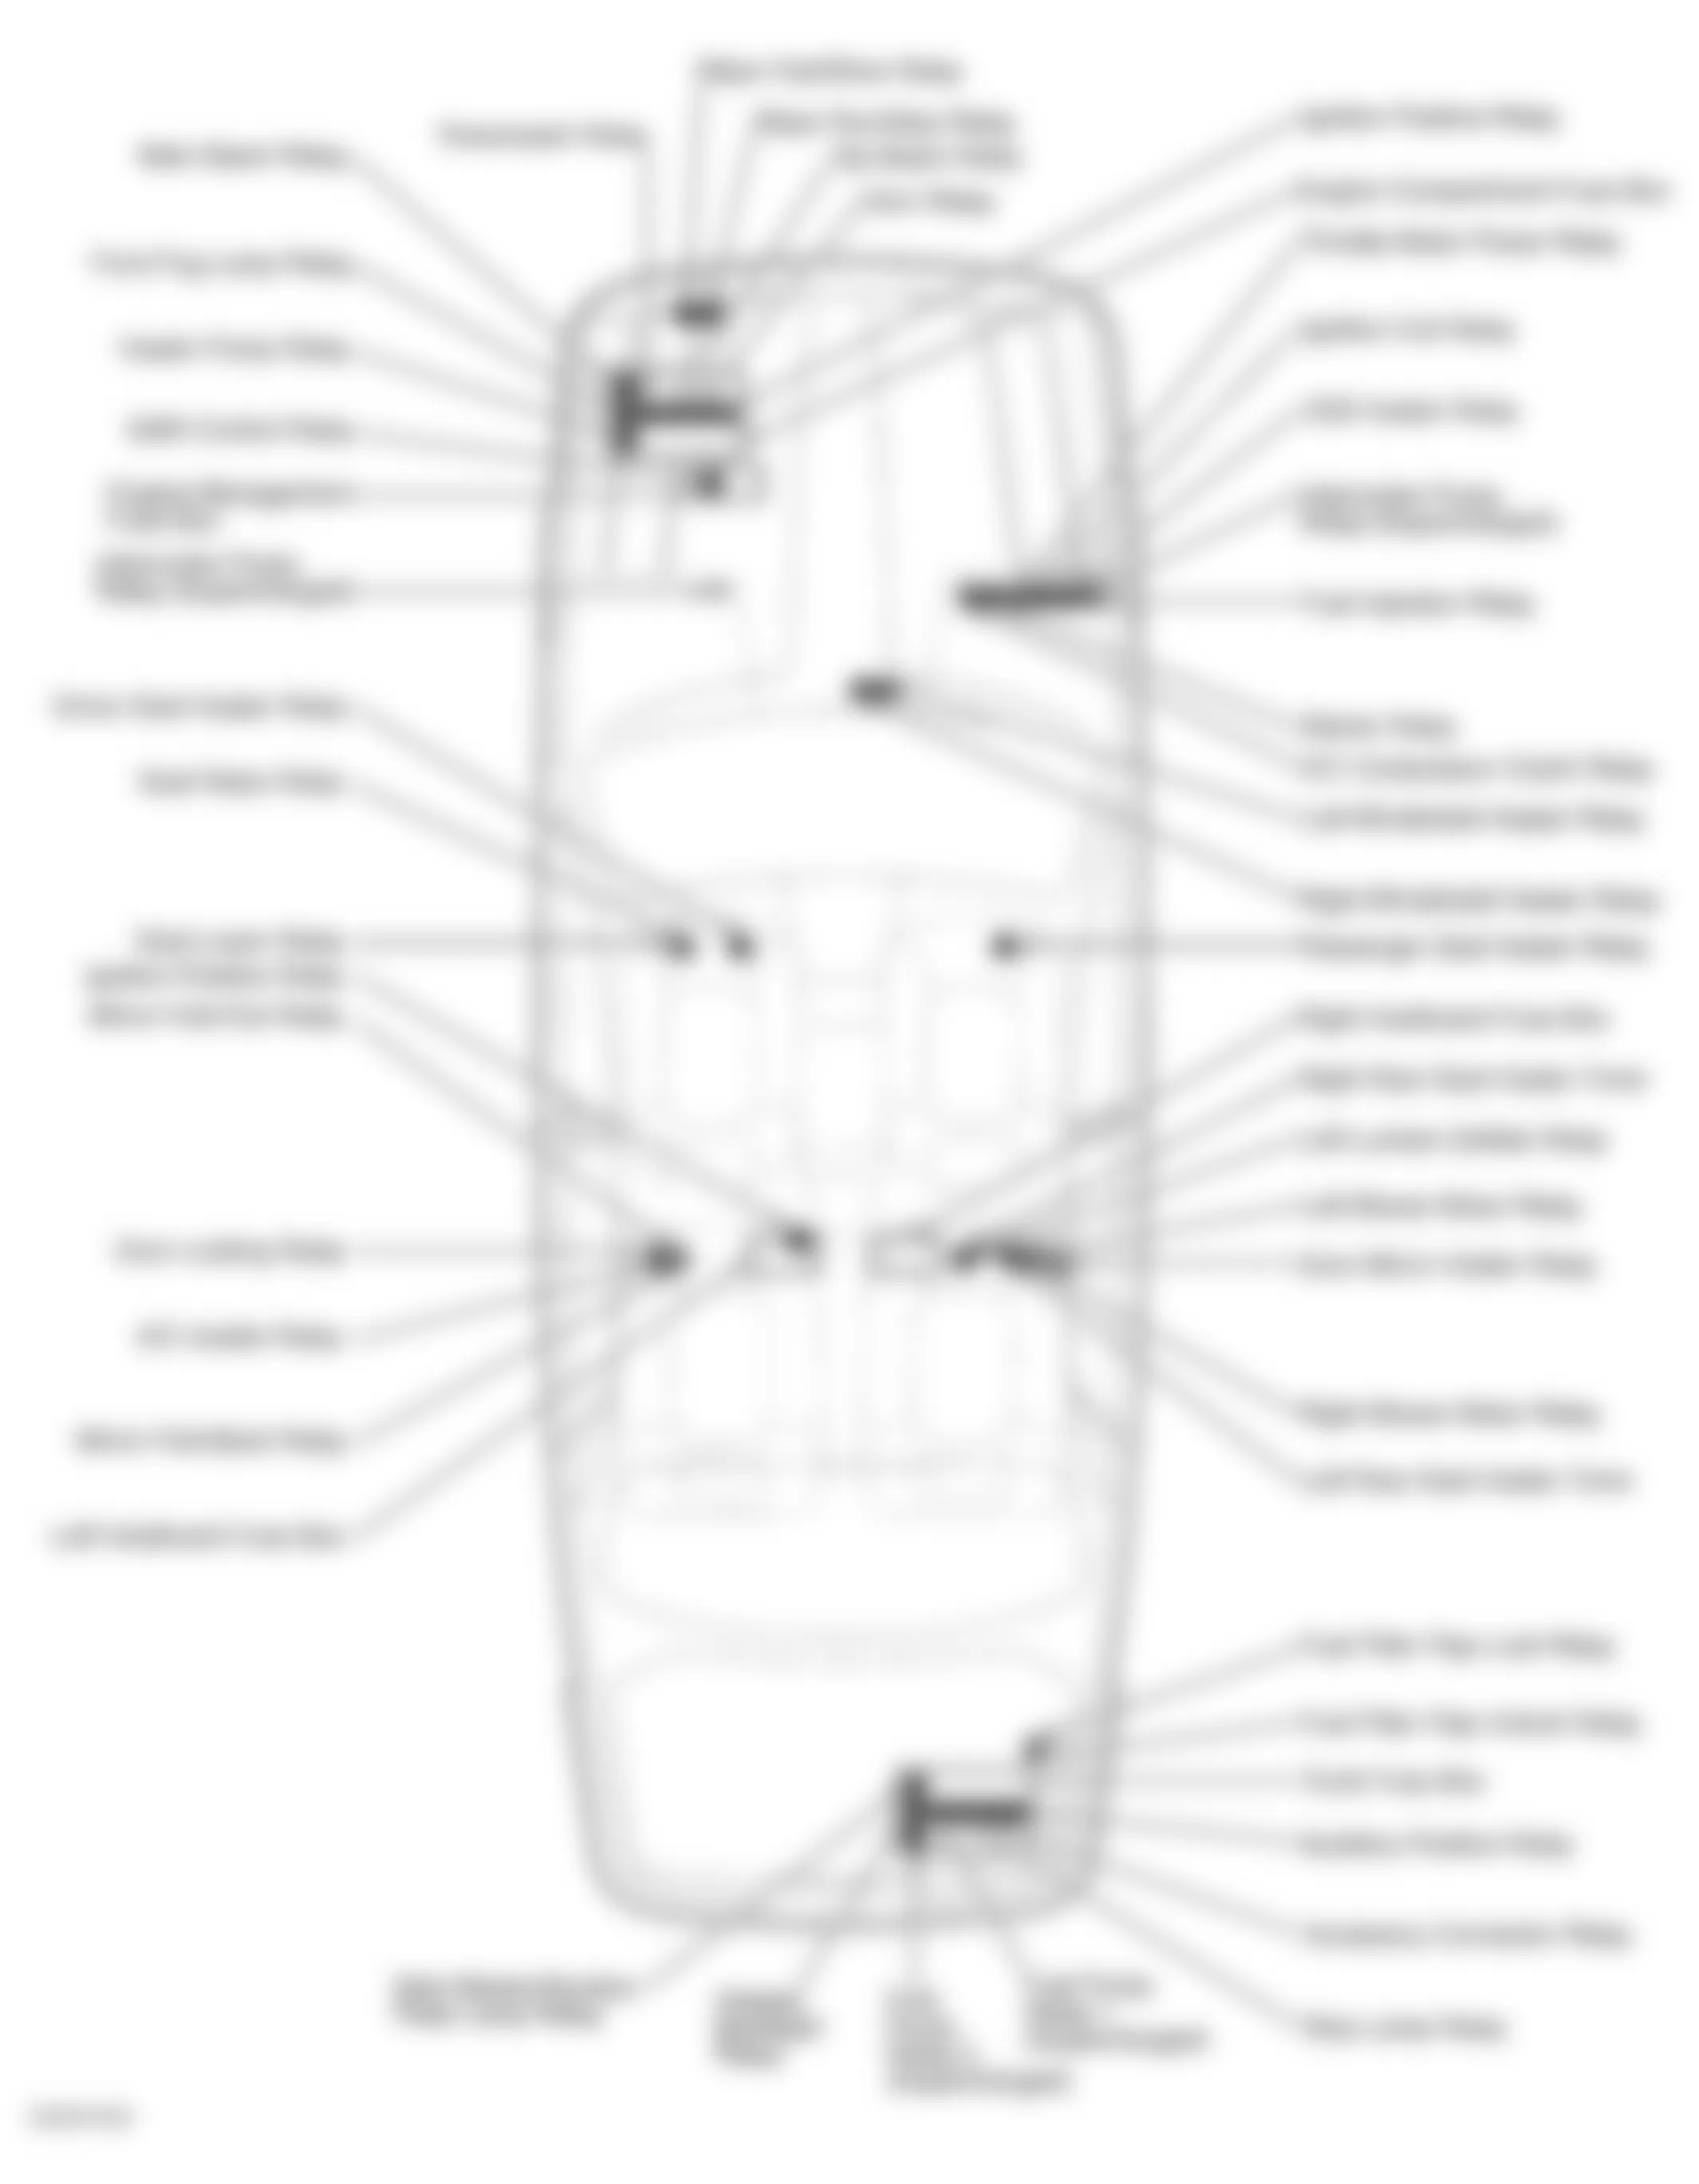 Jaguar XJ8 2000 - Component Locations -  Vehicle Overview